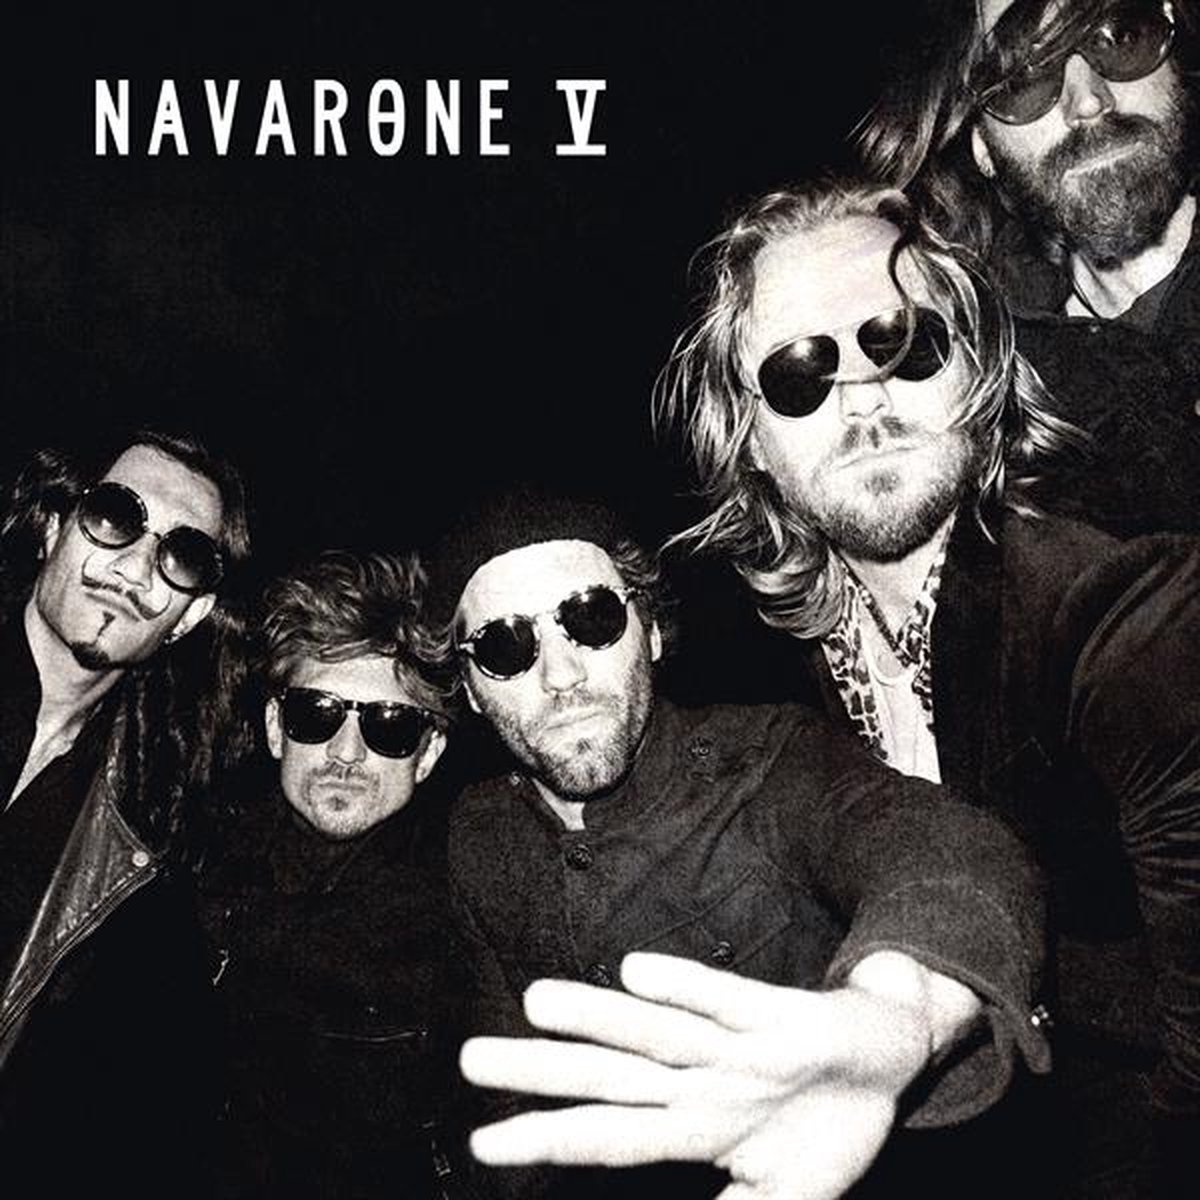 Pre-release instore Navarone